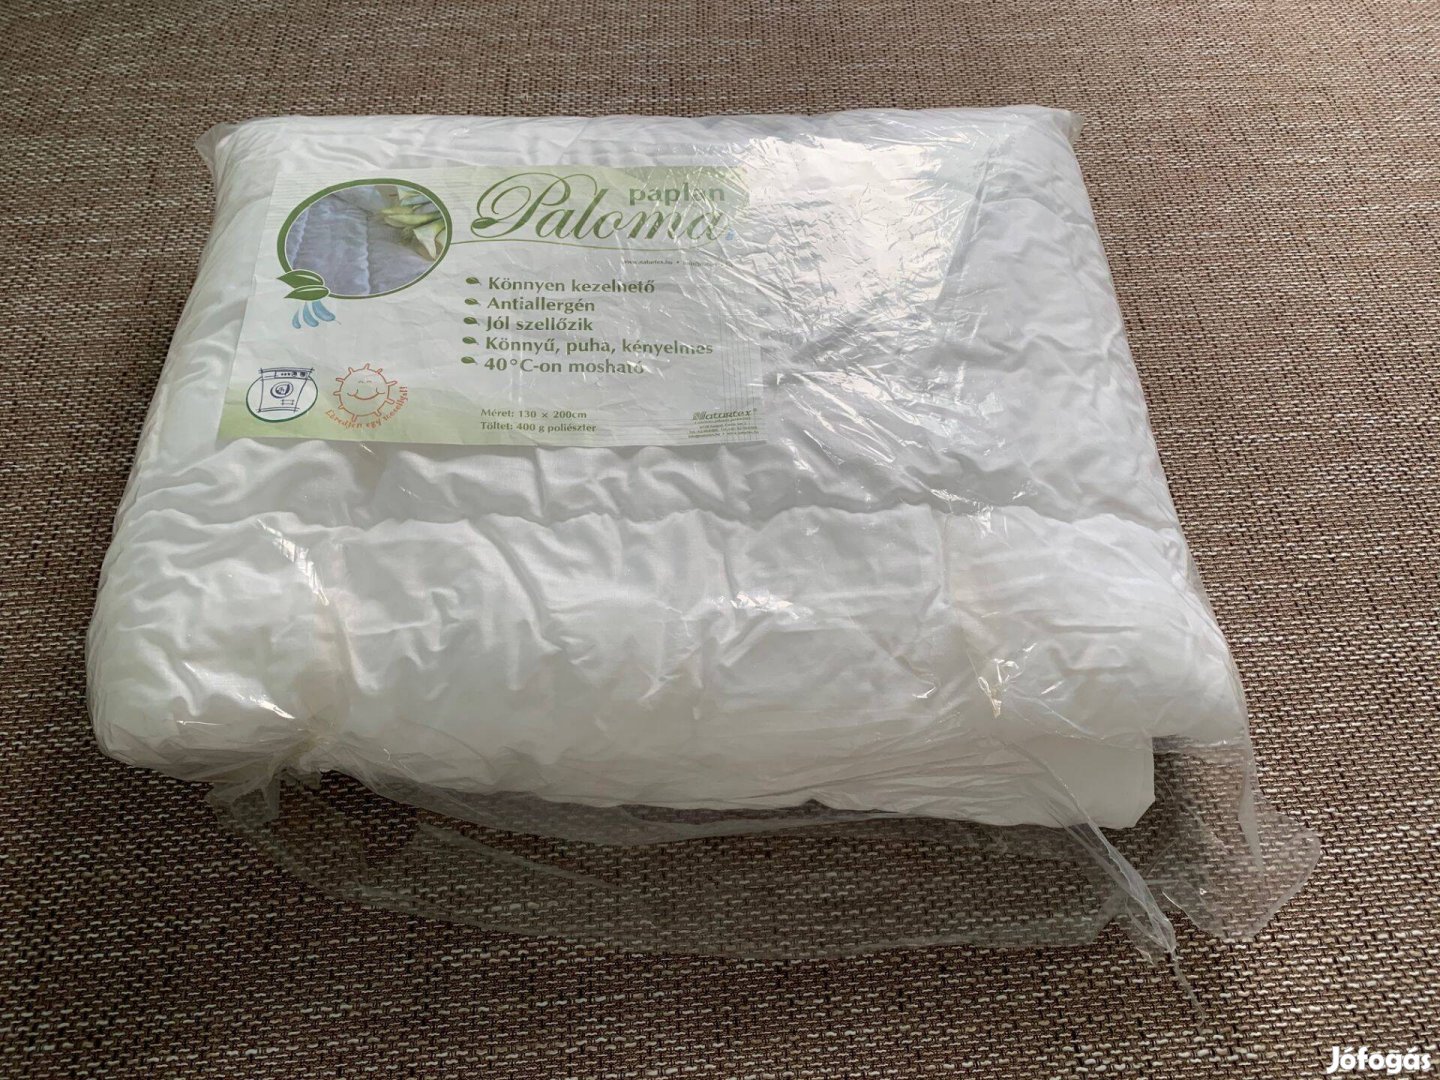 Naturtex fehér antiallergén nyári paplan takaró 130x200cm új